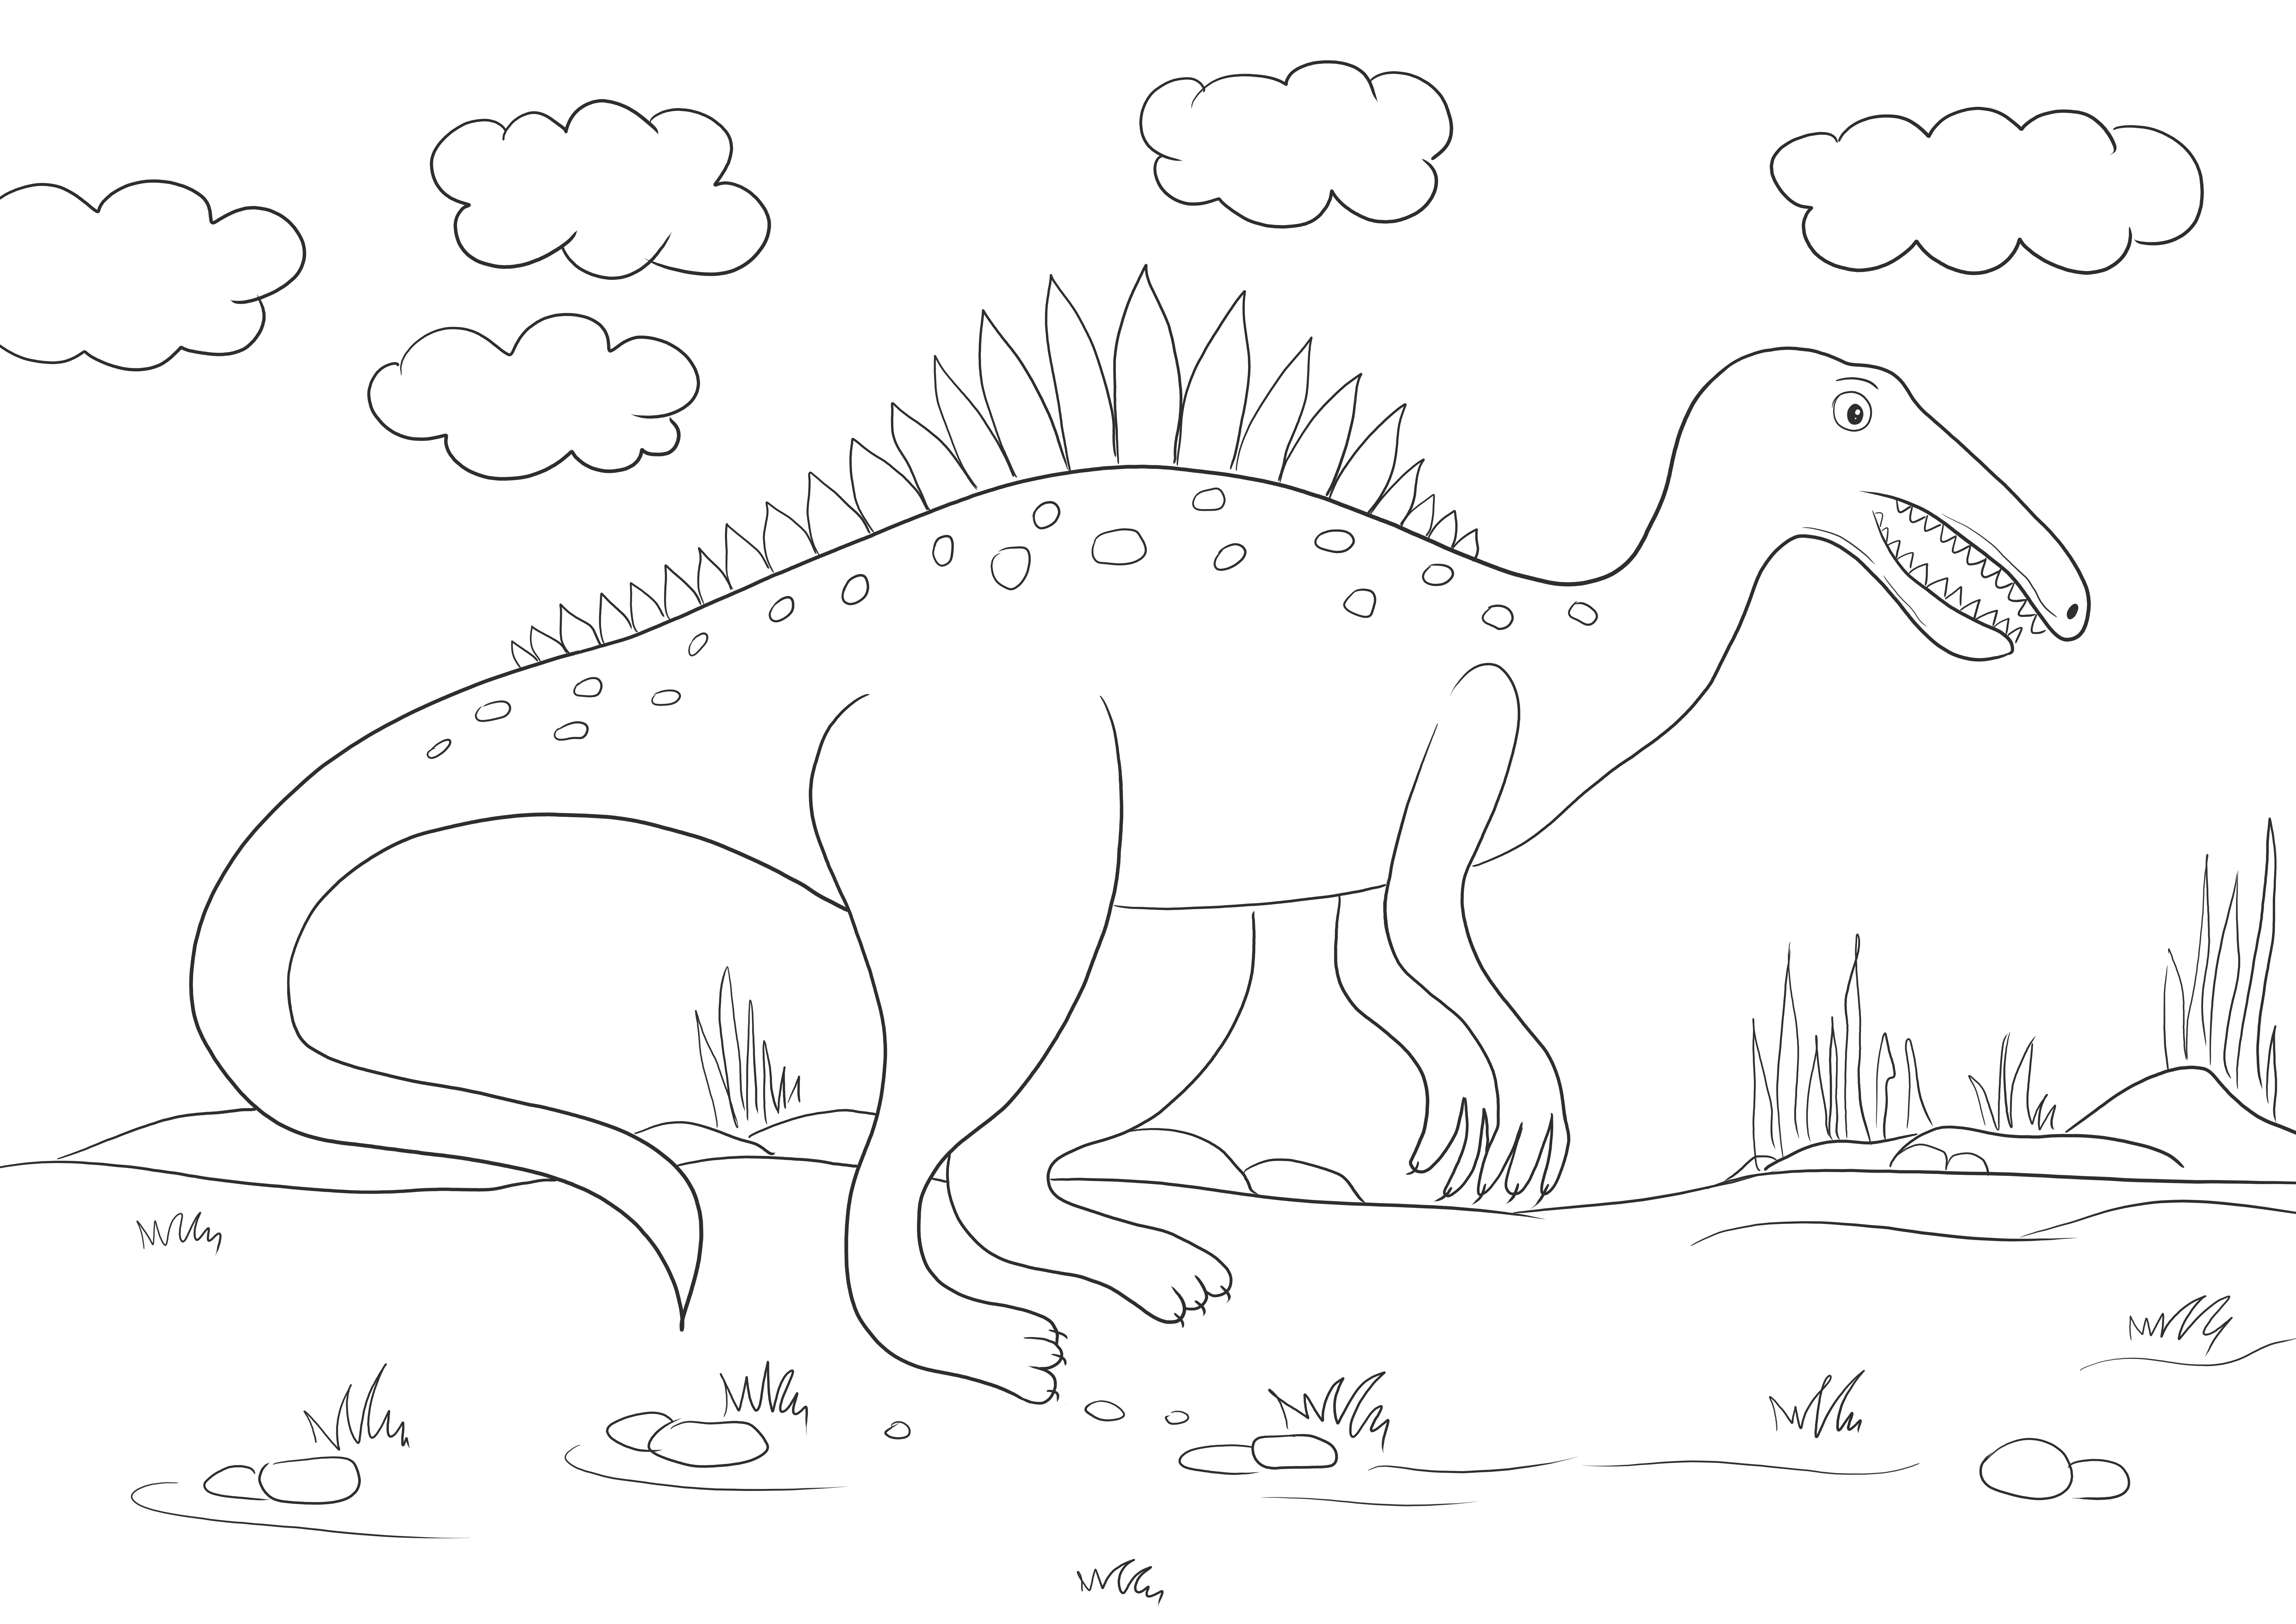 Spinosaurus-Dinosaurier einfaches Farbbild für alle Dinosaurierliebhaber